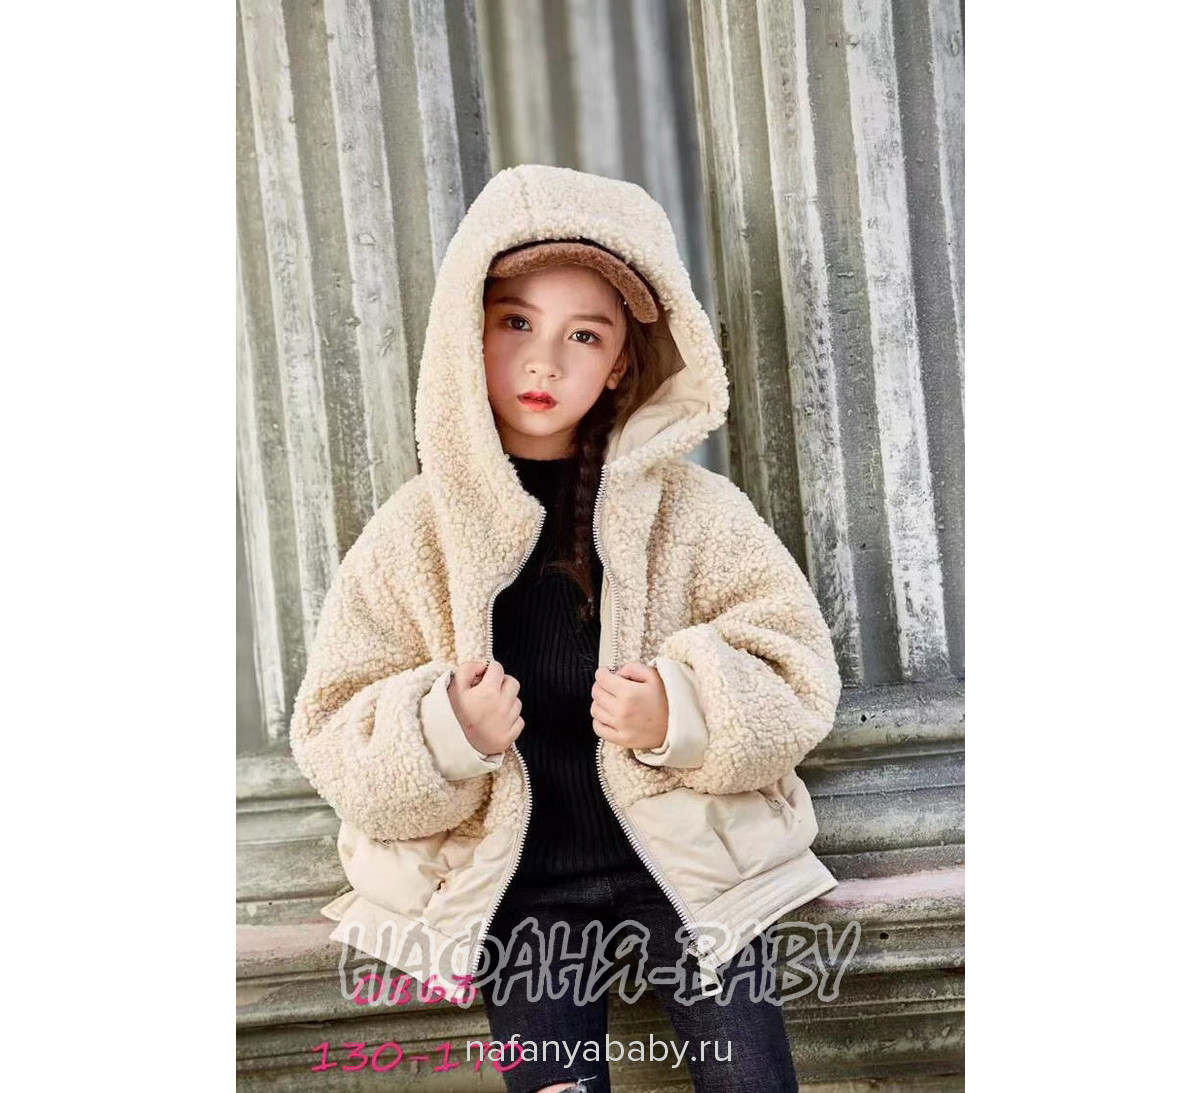 Детская демисезонная куртка W.X., купить в интернет магазине Нафаня. арт: 0863.